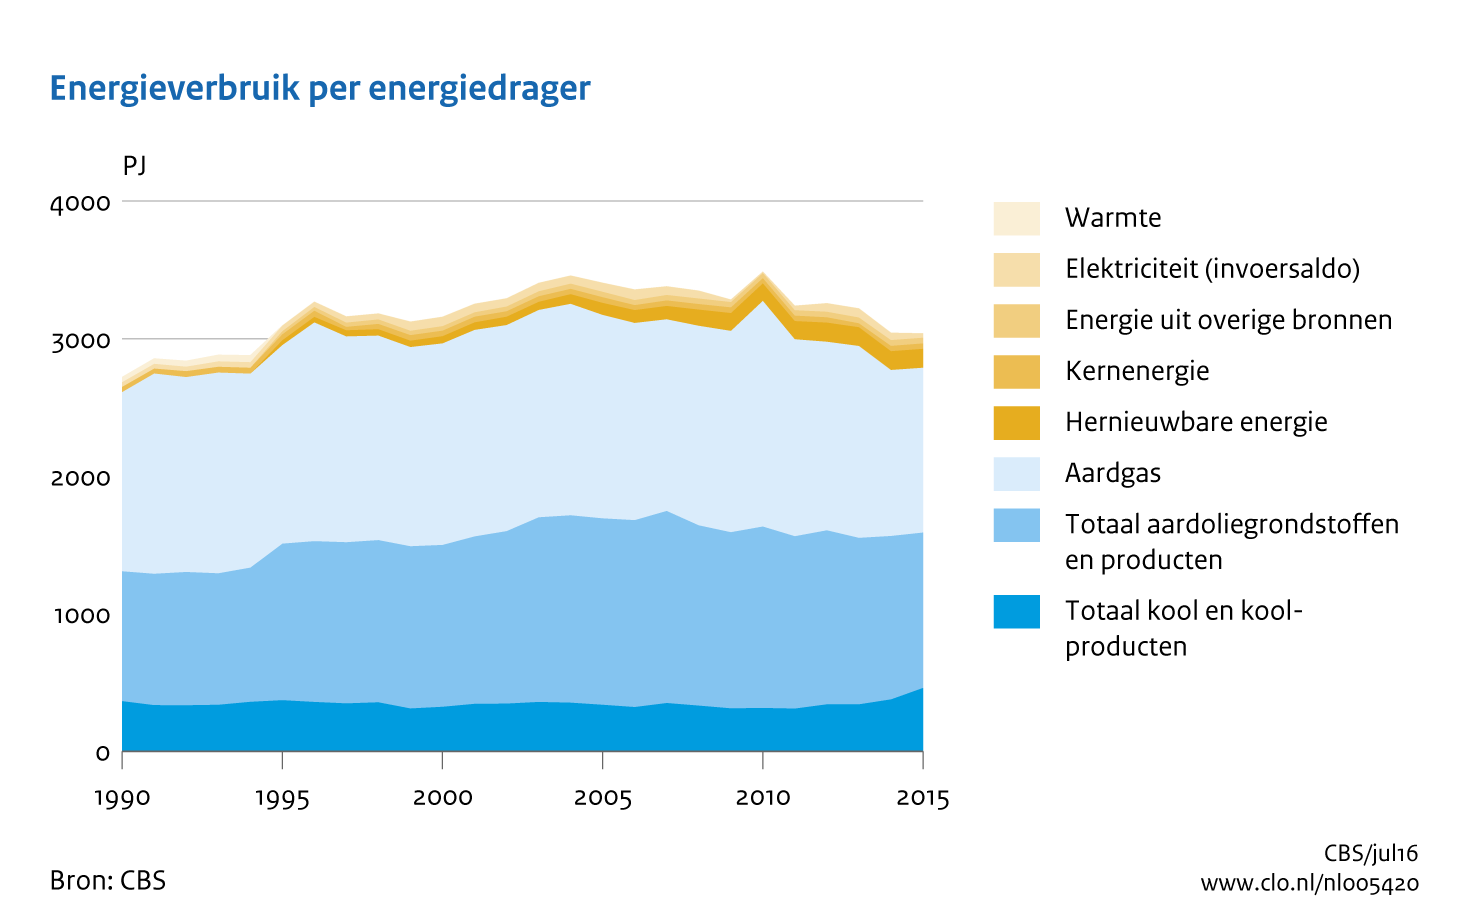 Figuur Energieverbruik per energiedrager 1990-2015. In de rest van de tekst wordt deze figuur uitgebreider uitgelegd.